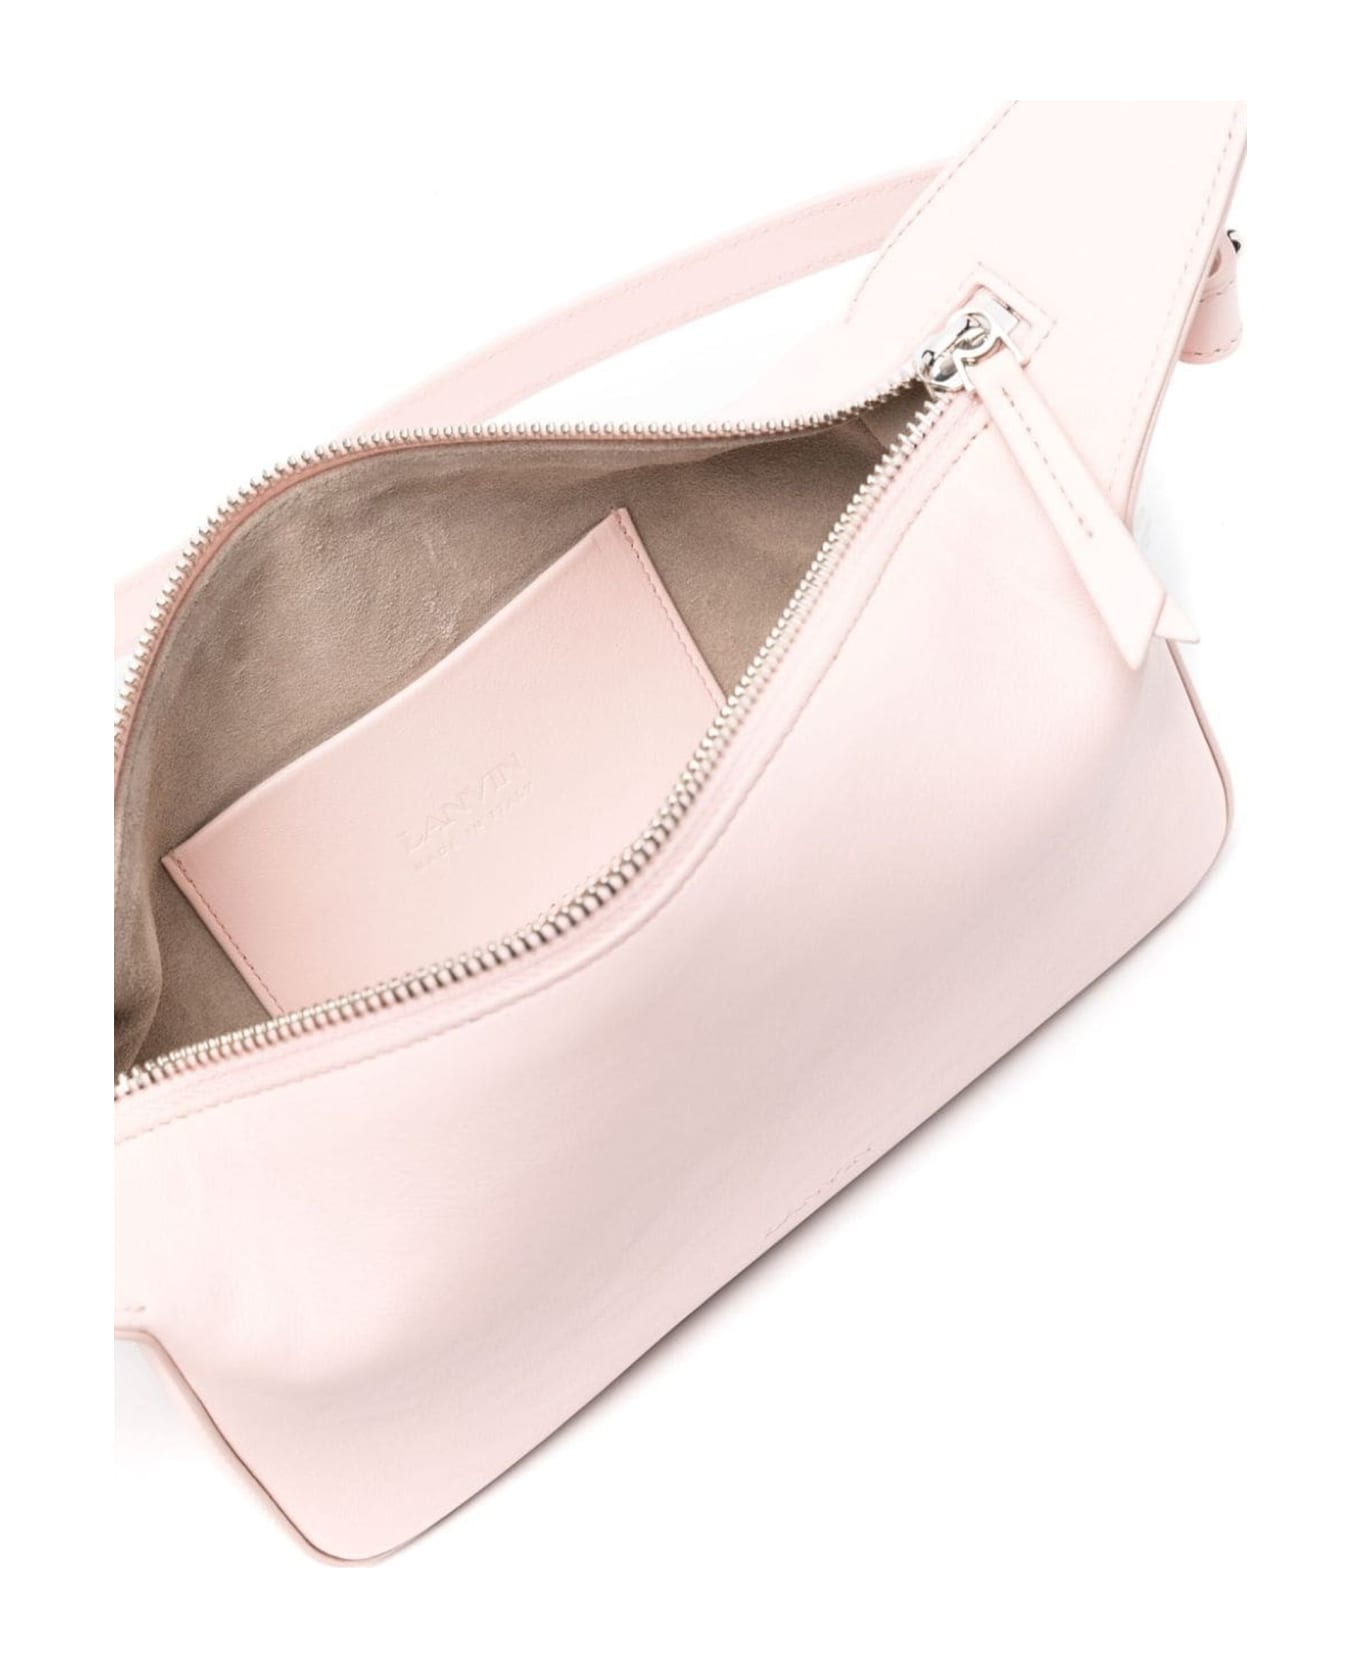 Lanvin Light Pink Tasche Leather Shoulder Bag - Pink